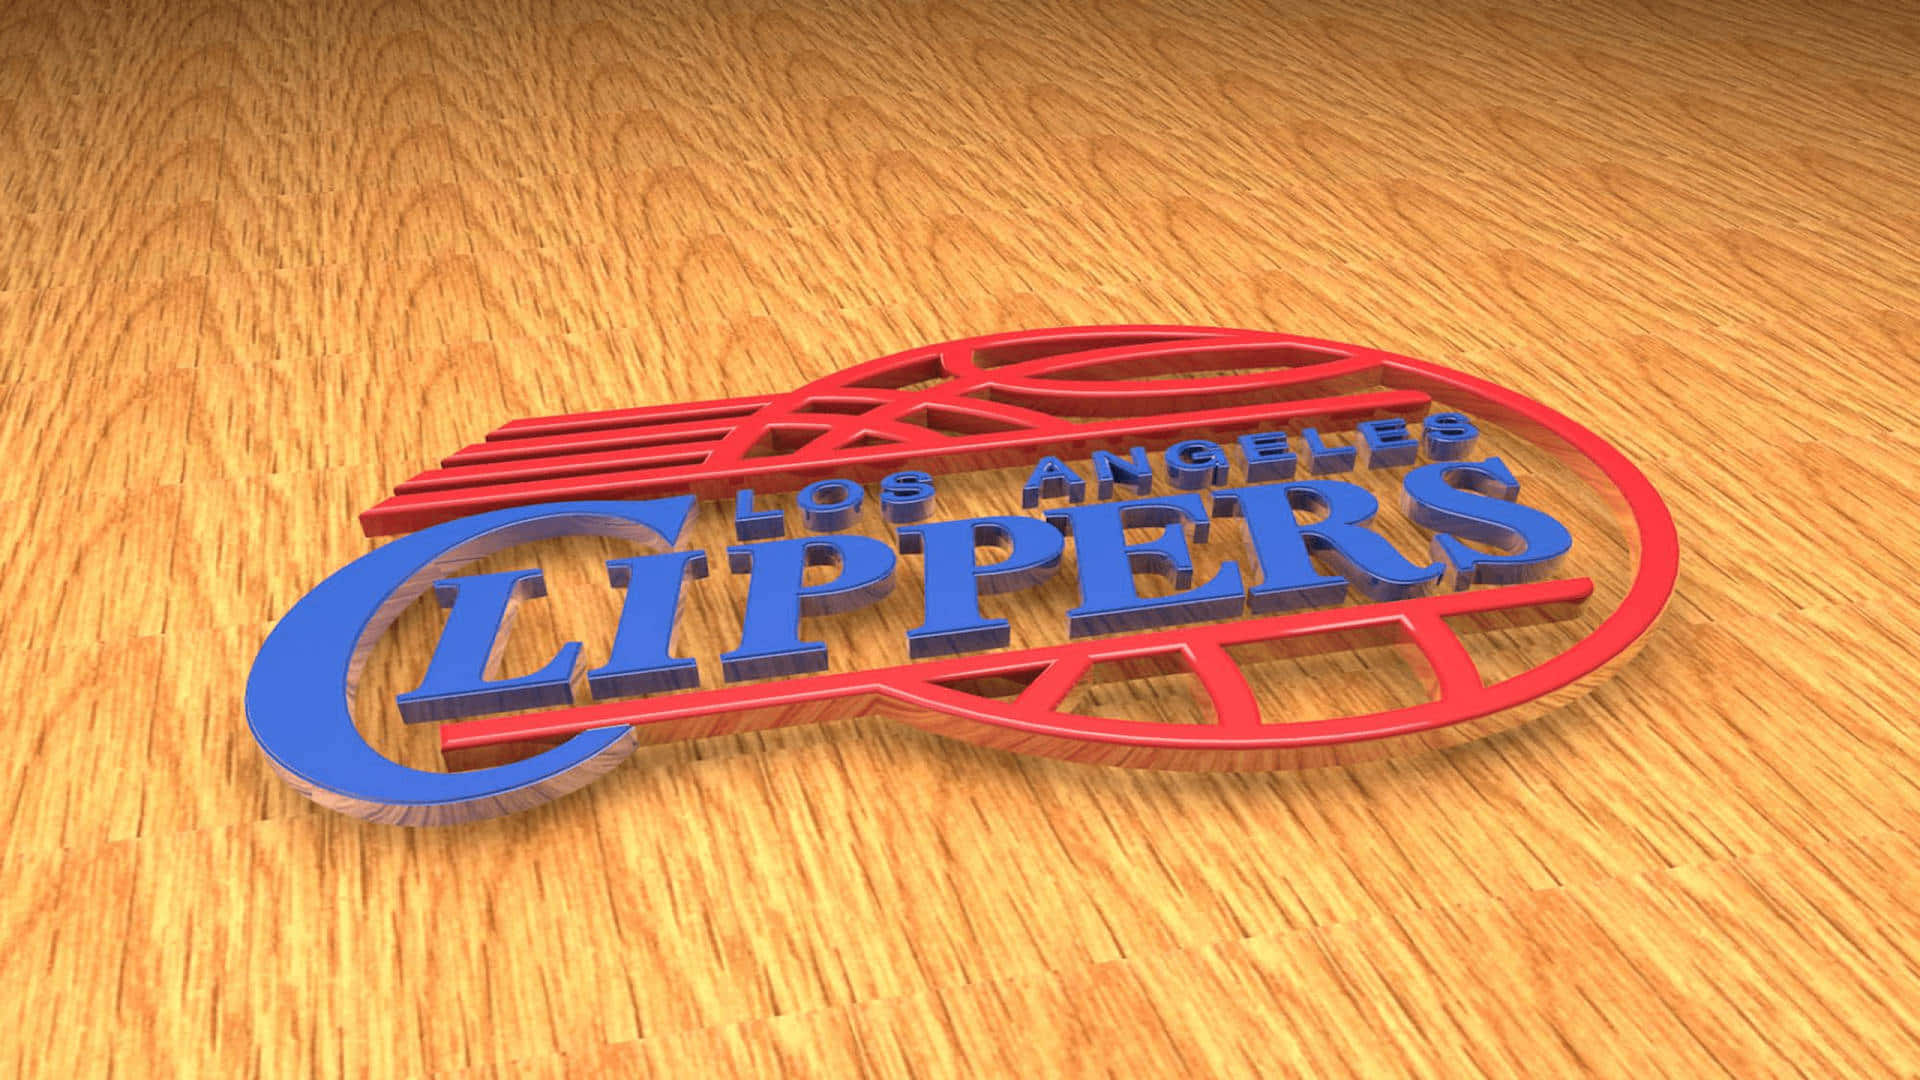 Basketball Team LA Clippers 3D Digital Art Wallpaper